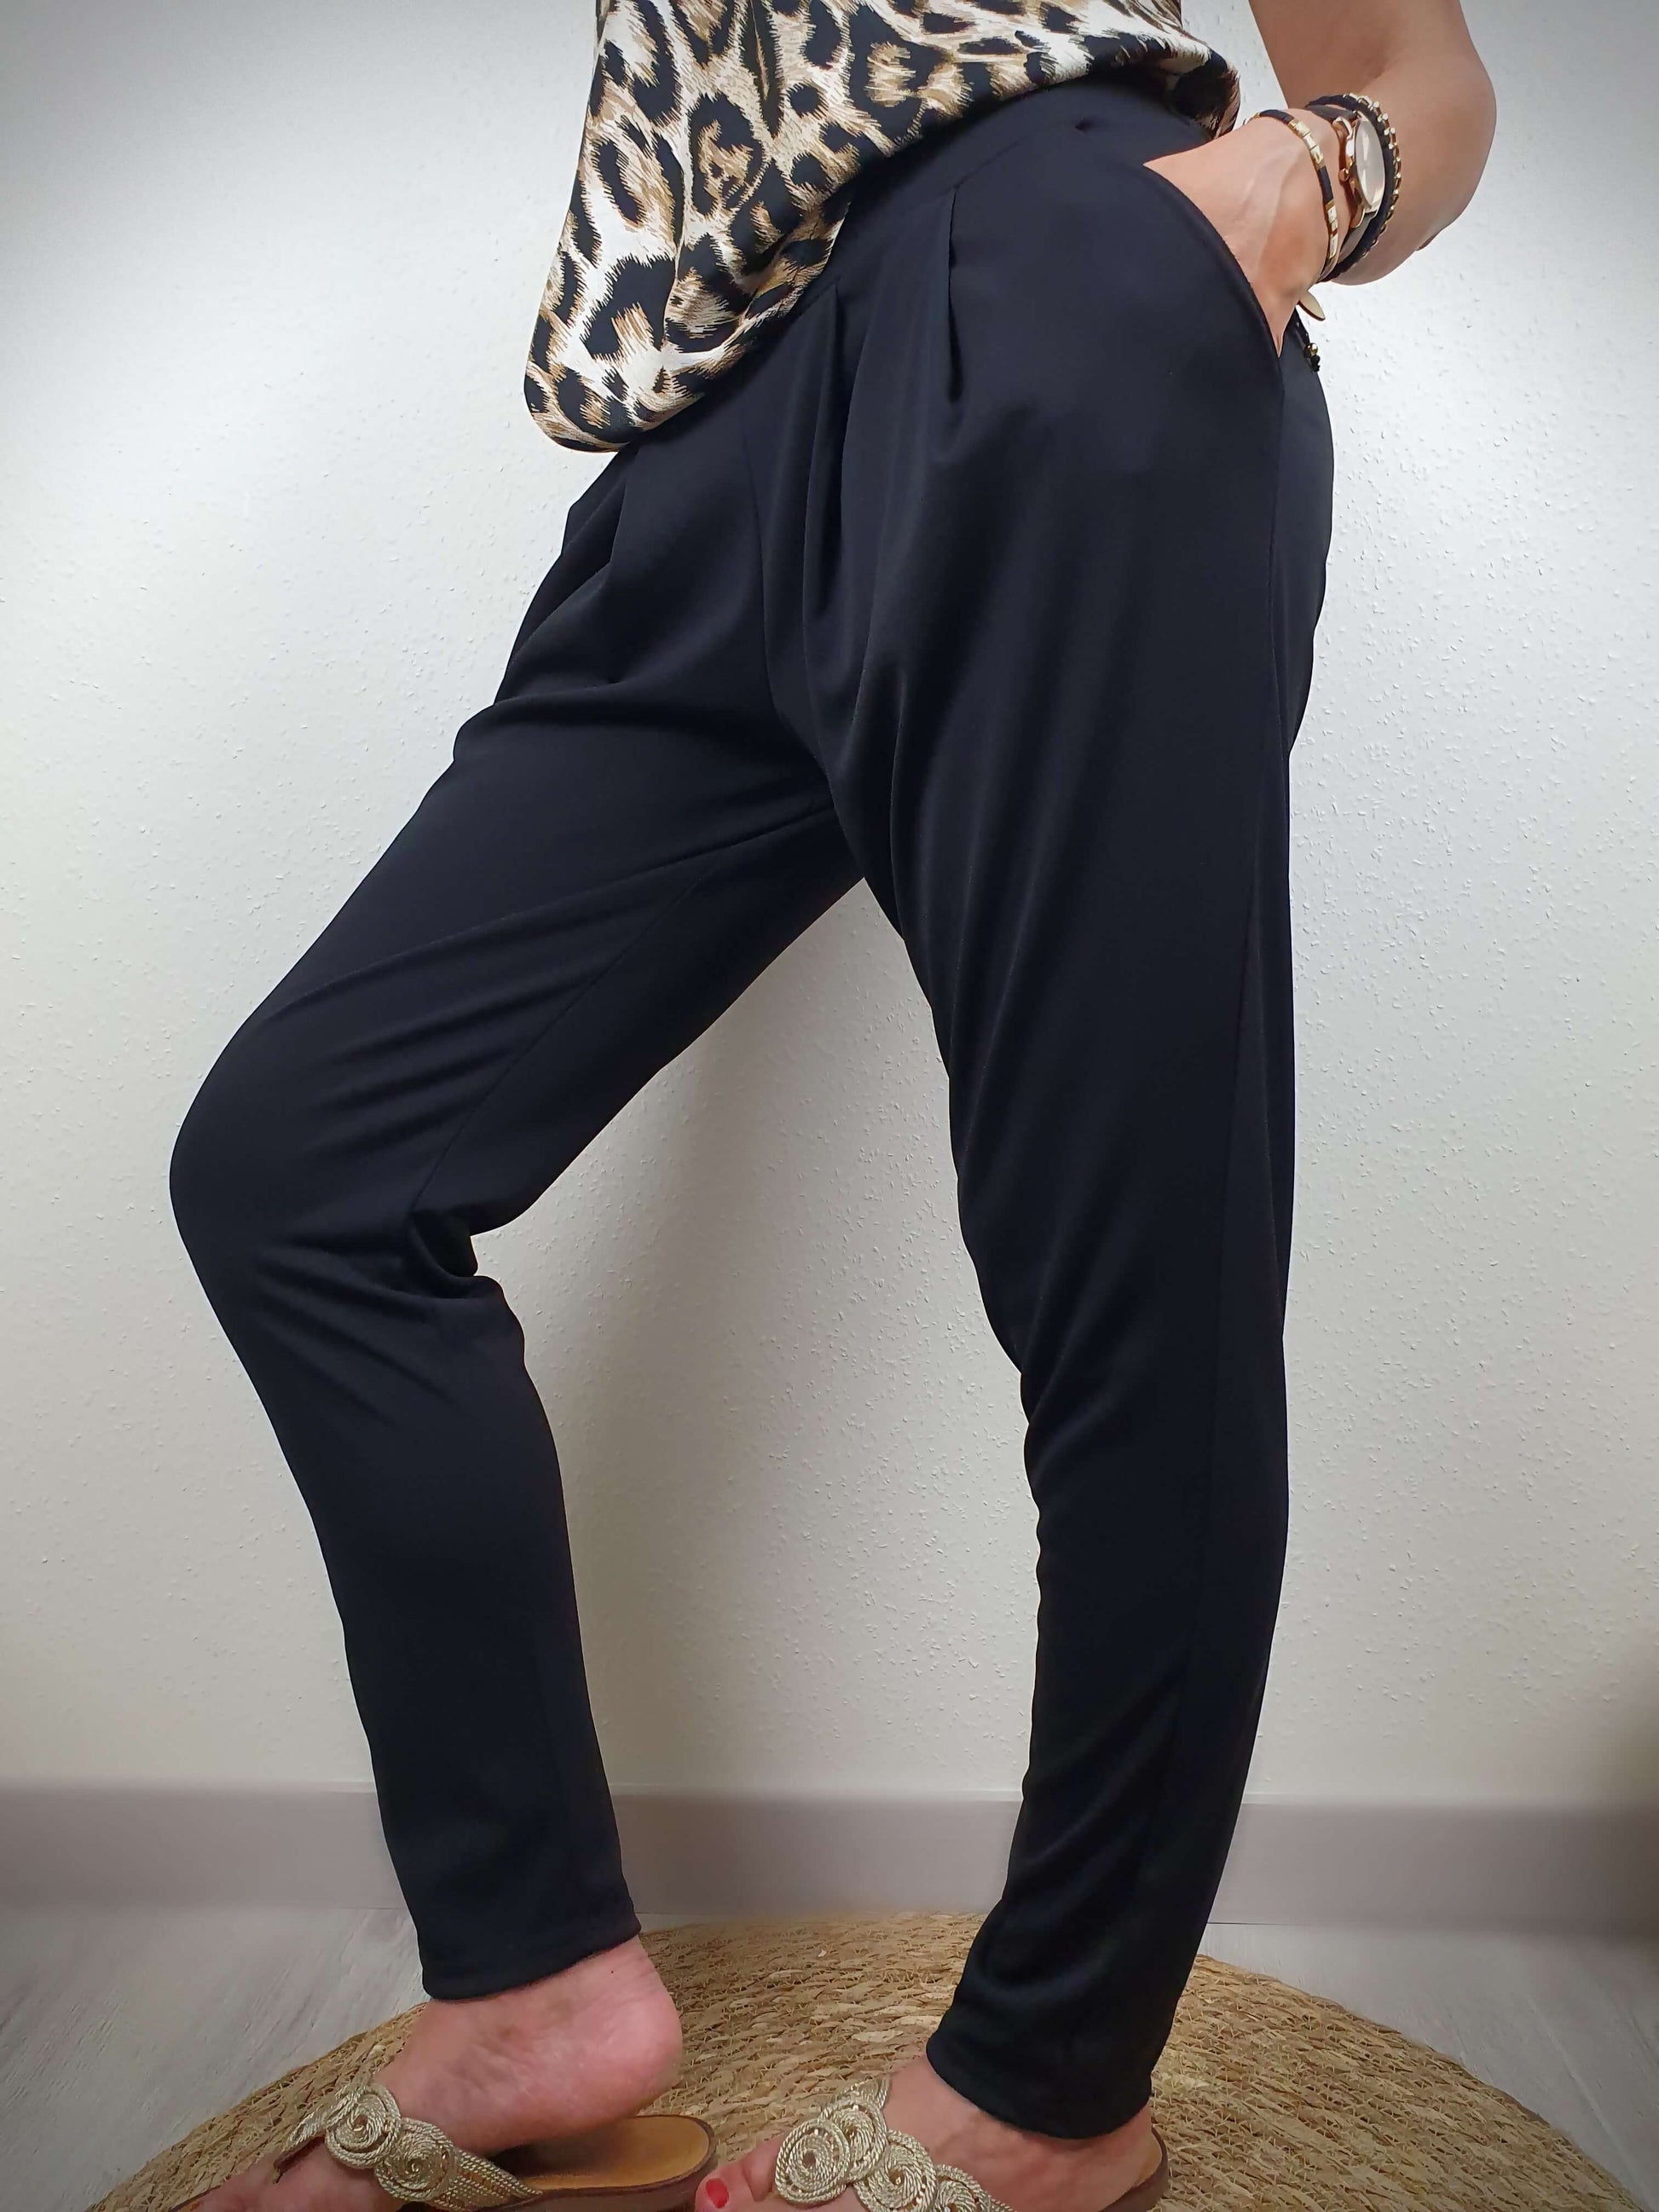 Ce pantalon ample de couleur noir, fabriqué en France, séduit par sa coupe confortable. Doté d'une poche italienne de chaque côté, il allie praticité et style. Sa matière fluide et légère, composée à 95% de polyester et 5% d'élasthanne, offre une sensation agréable. Un choix idéal pour allier confort et élégance.